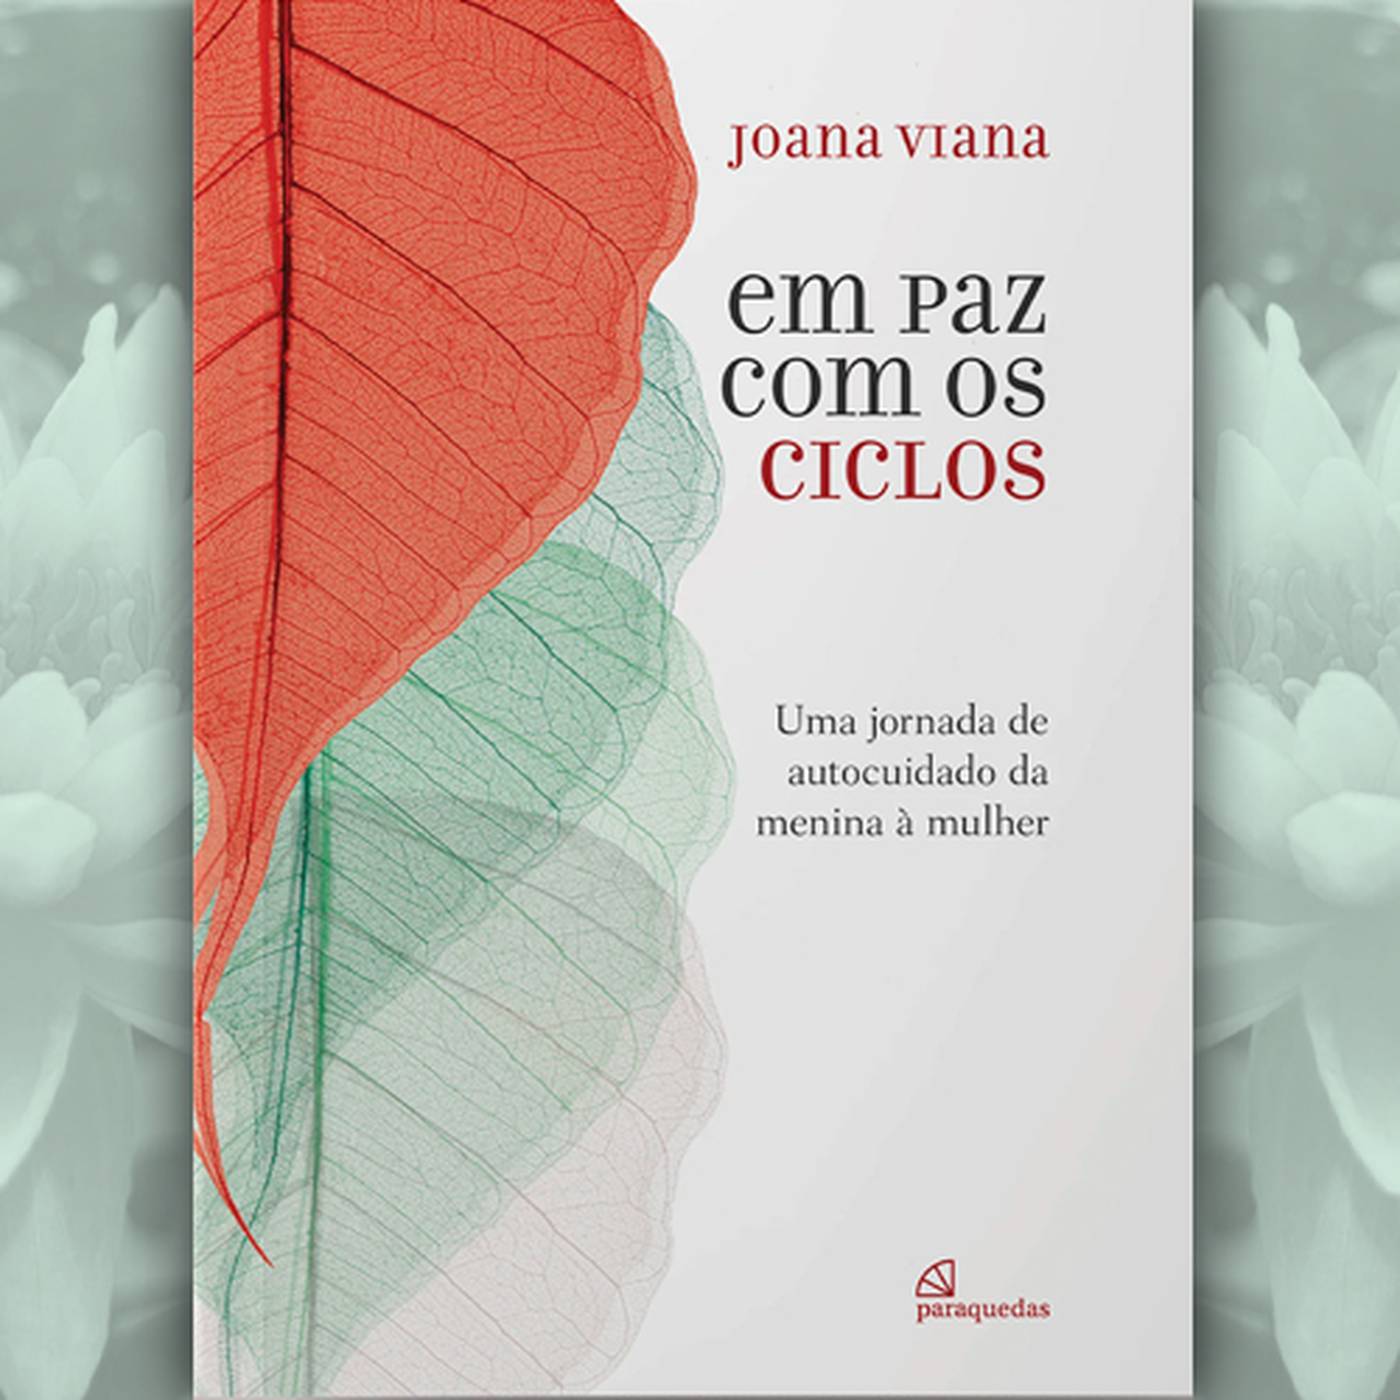 Em paz com os ciclos - Joana Viana - 1ª parte